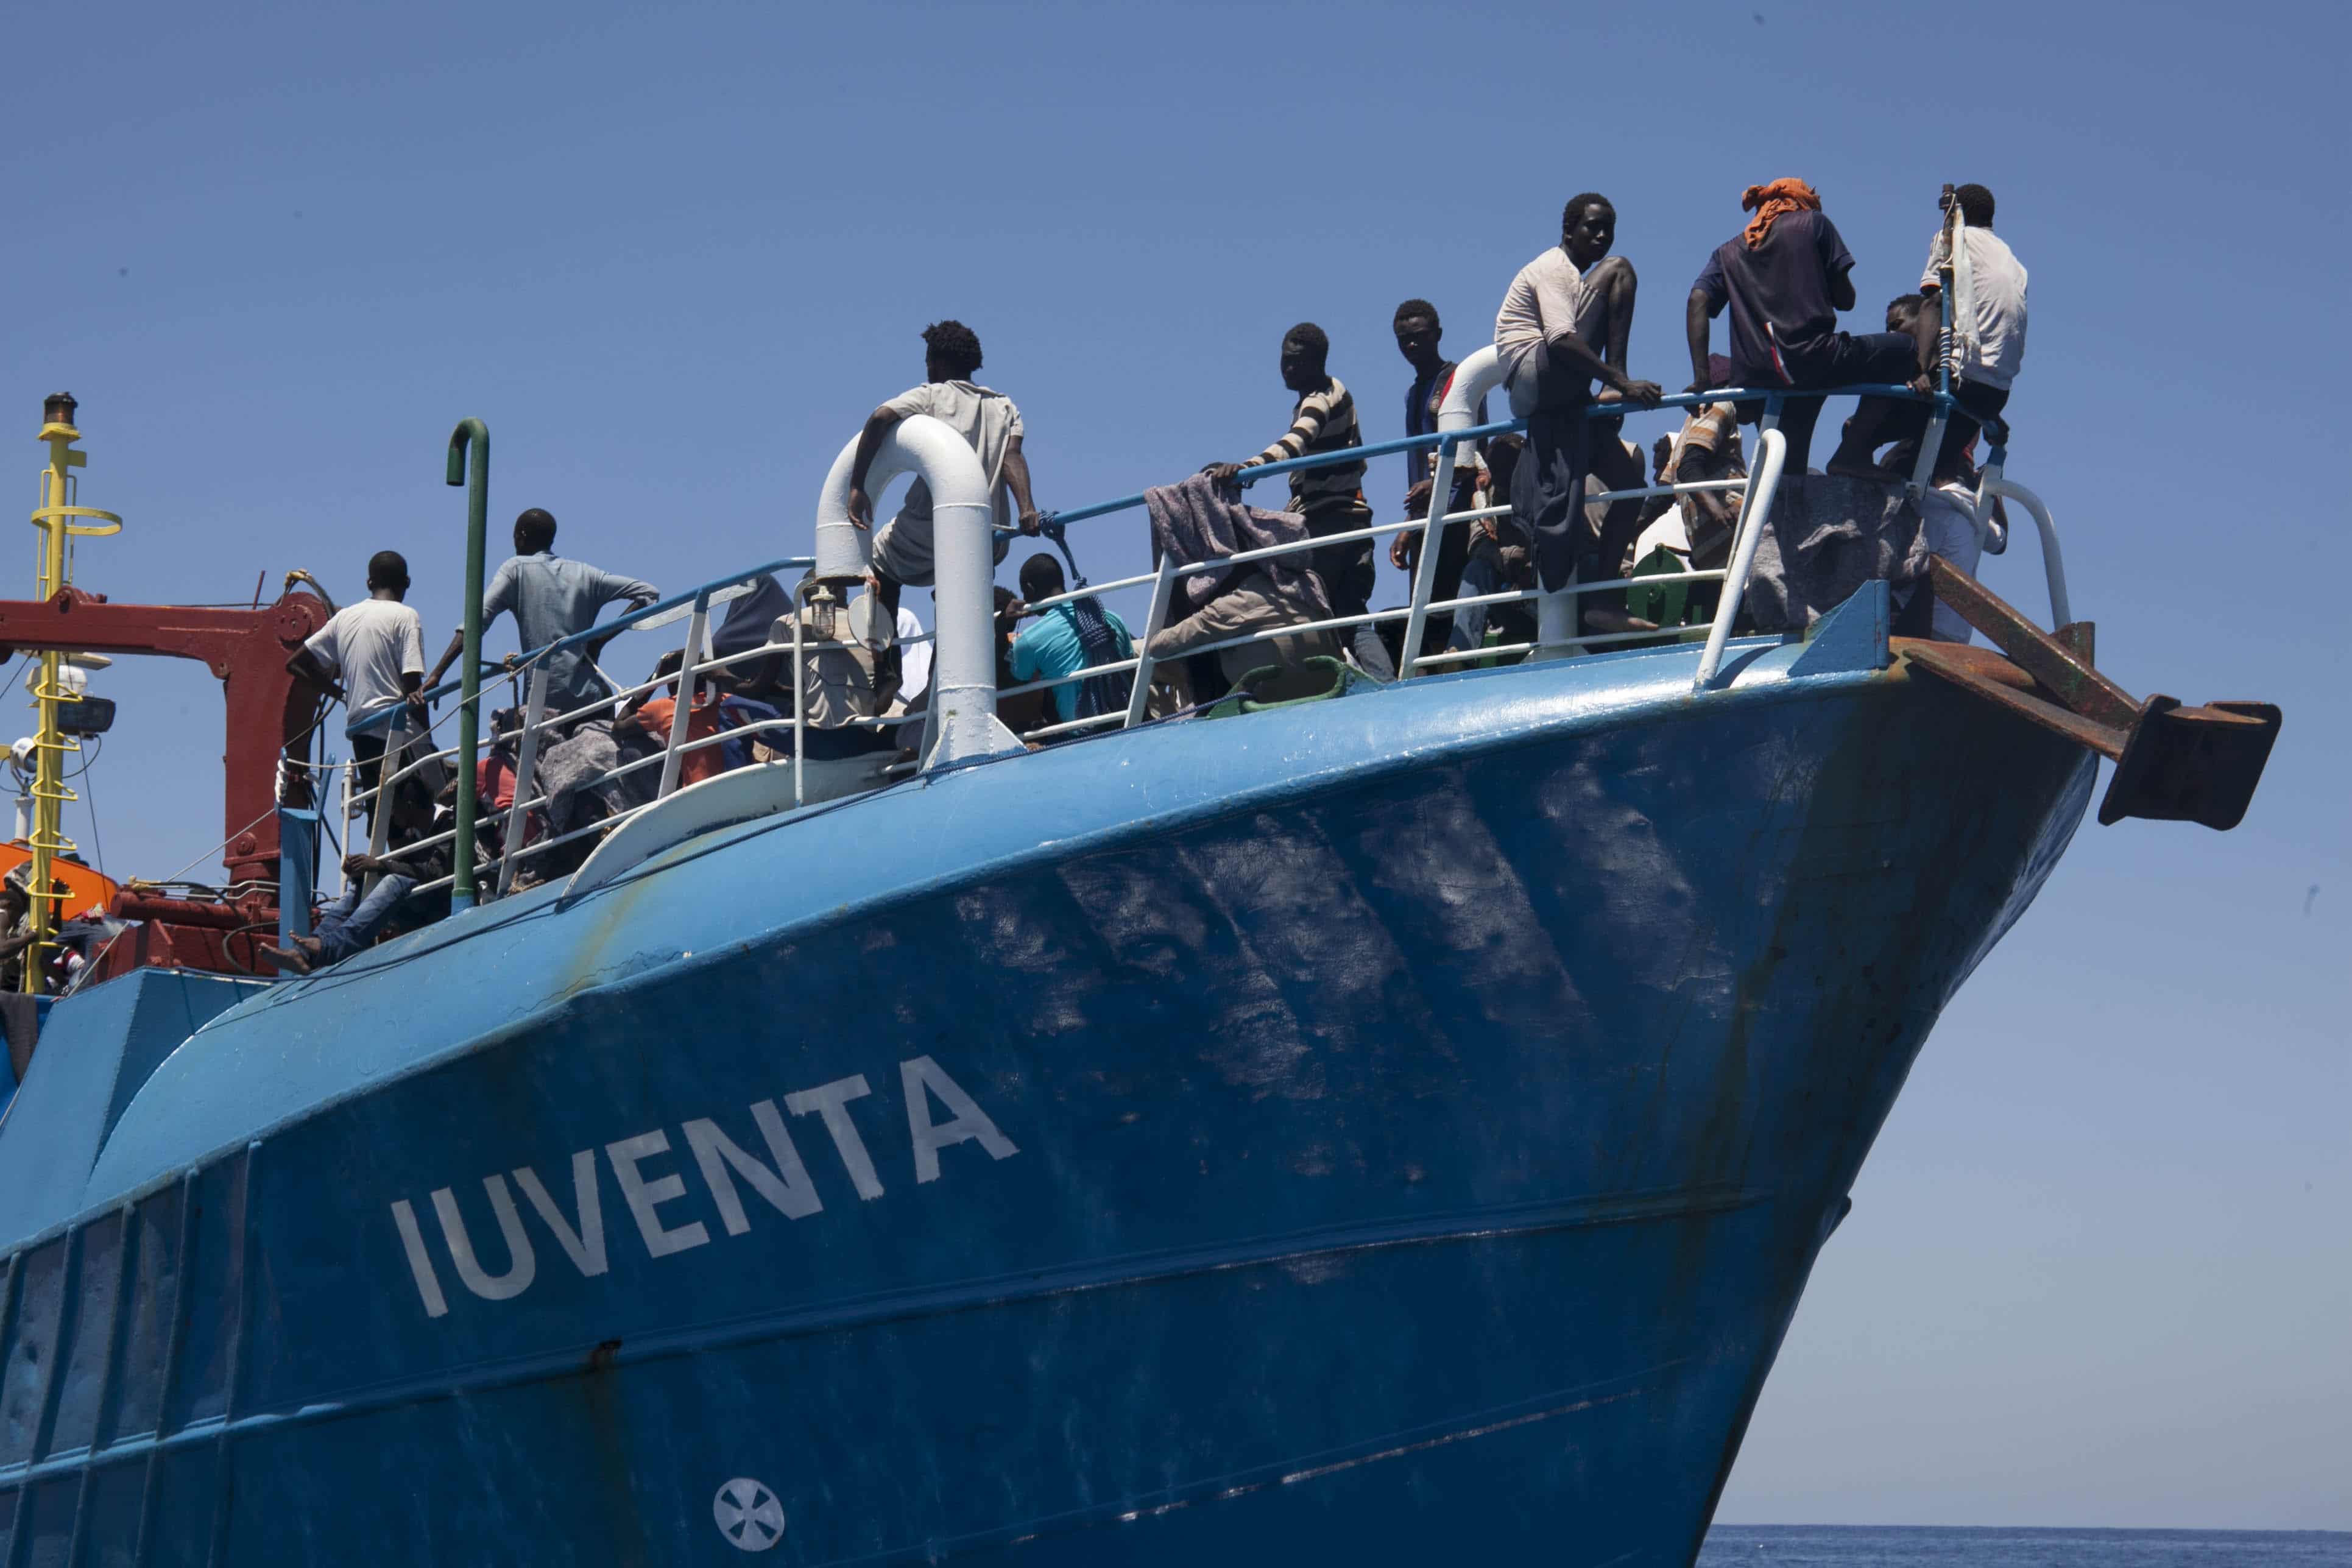 "Iuventa" di Michele Cinque all'Angelo Mai: il film sulla nave che ha salvato migliaia di persone